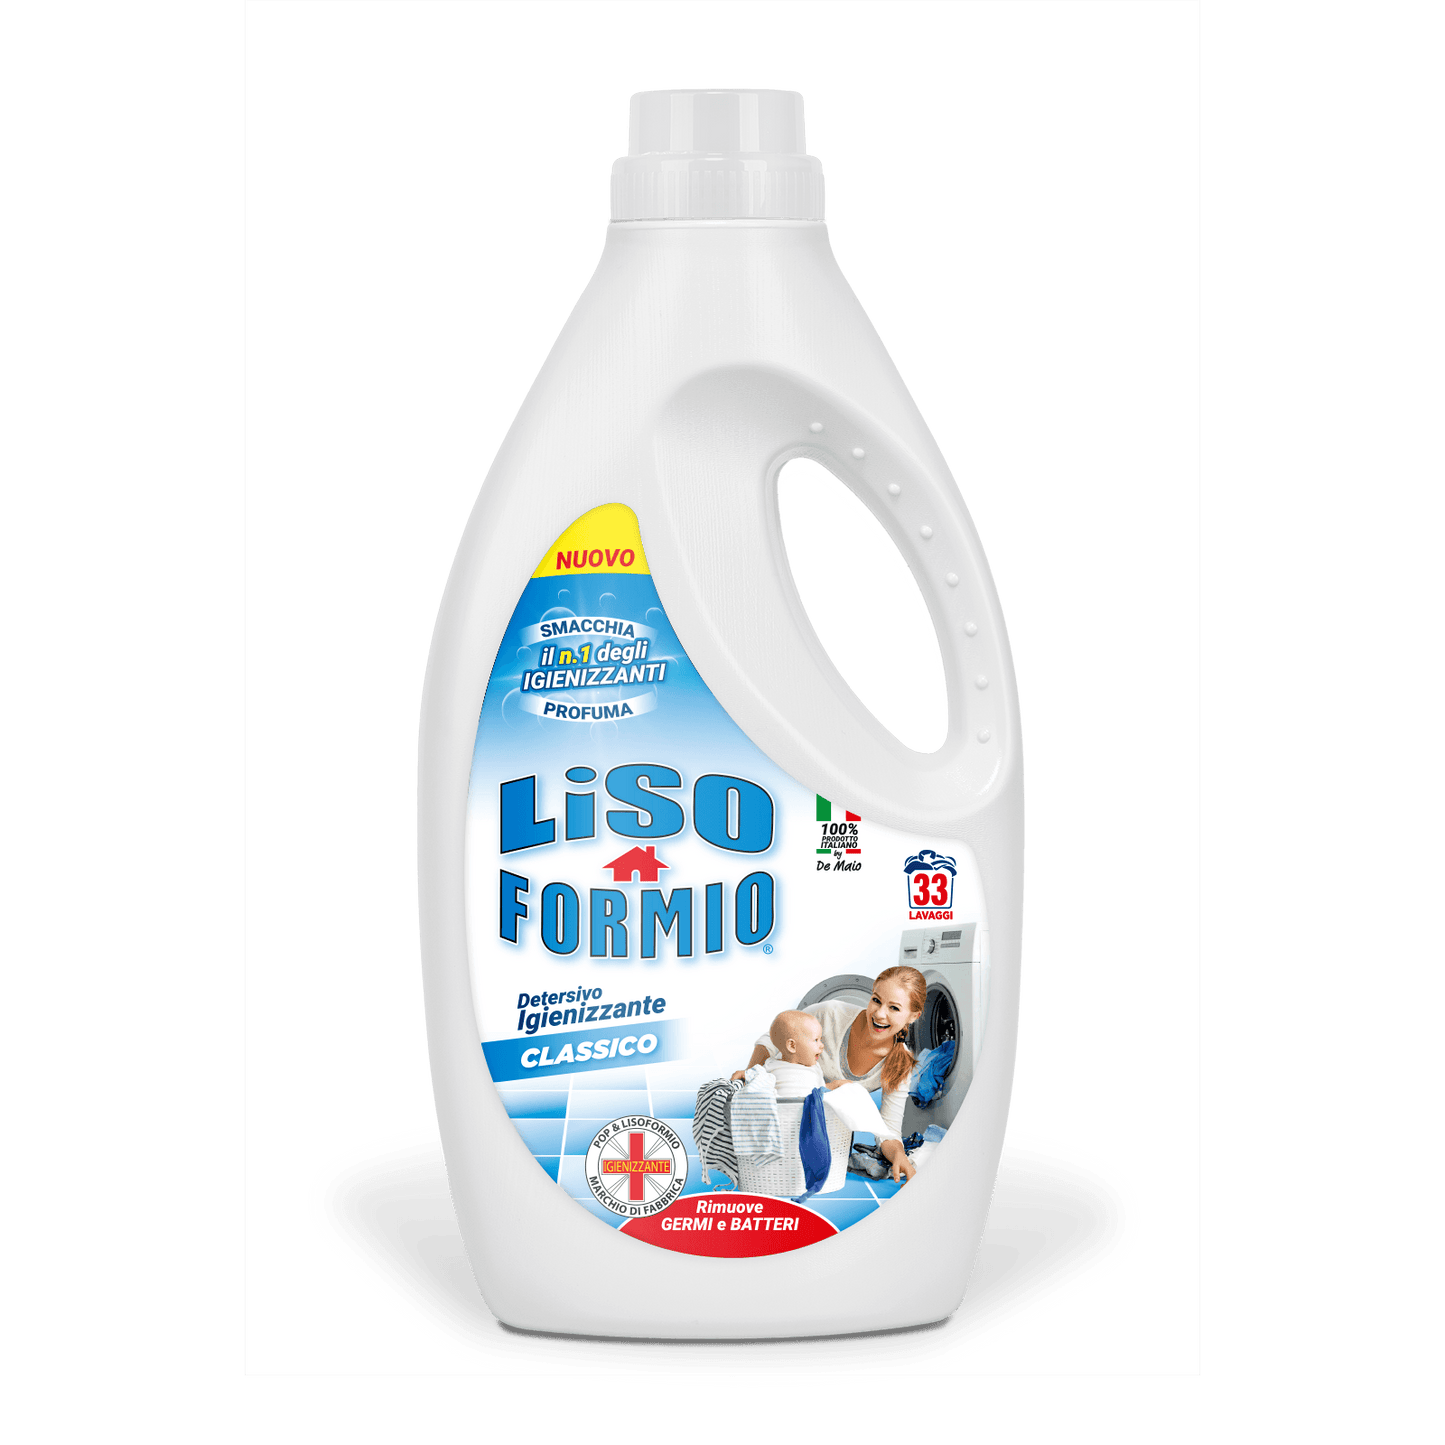 LISO FORMIO Detersivo Igienizzante CLASSICO - 33 Lavaggi